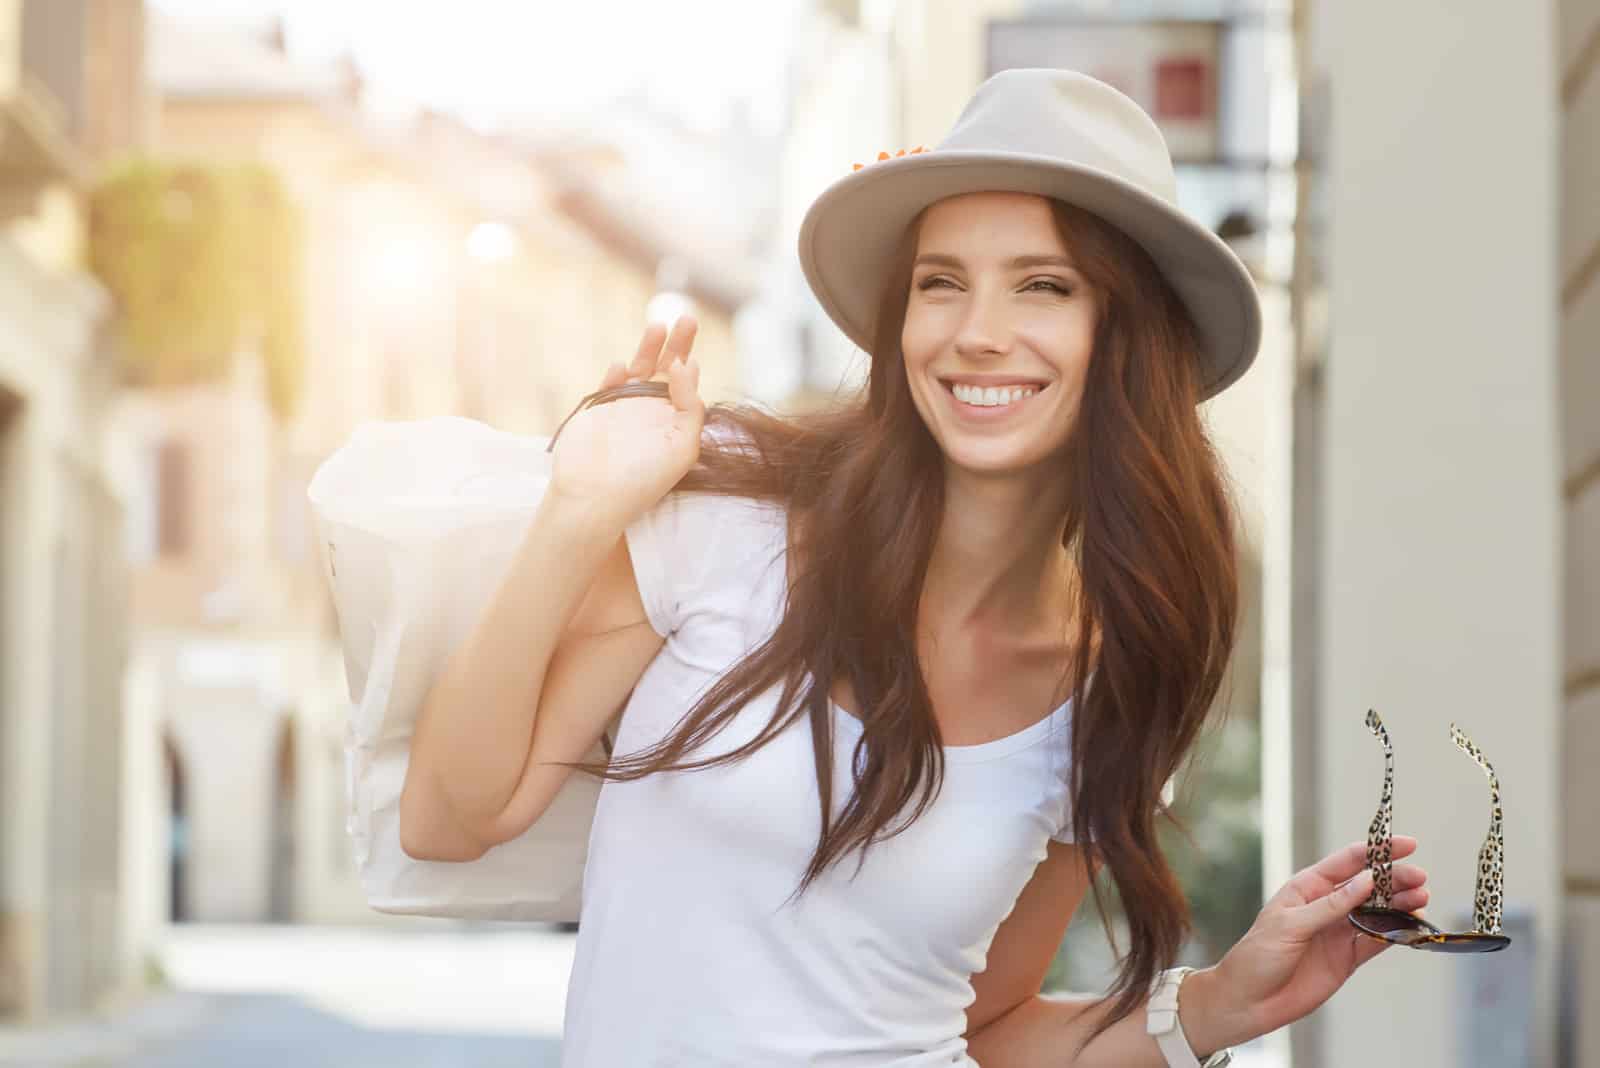 una donna sorridente con un cappello in testa si trova in strada